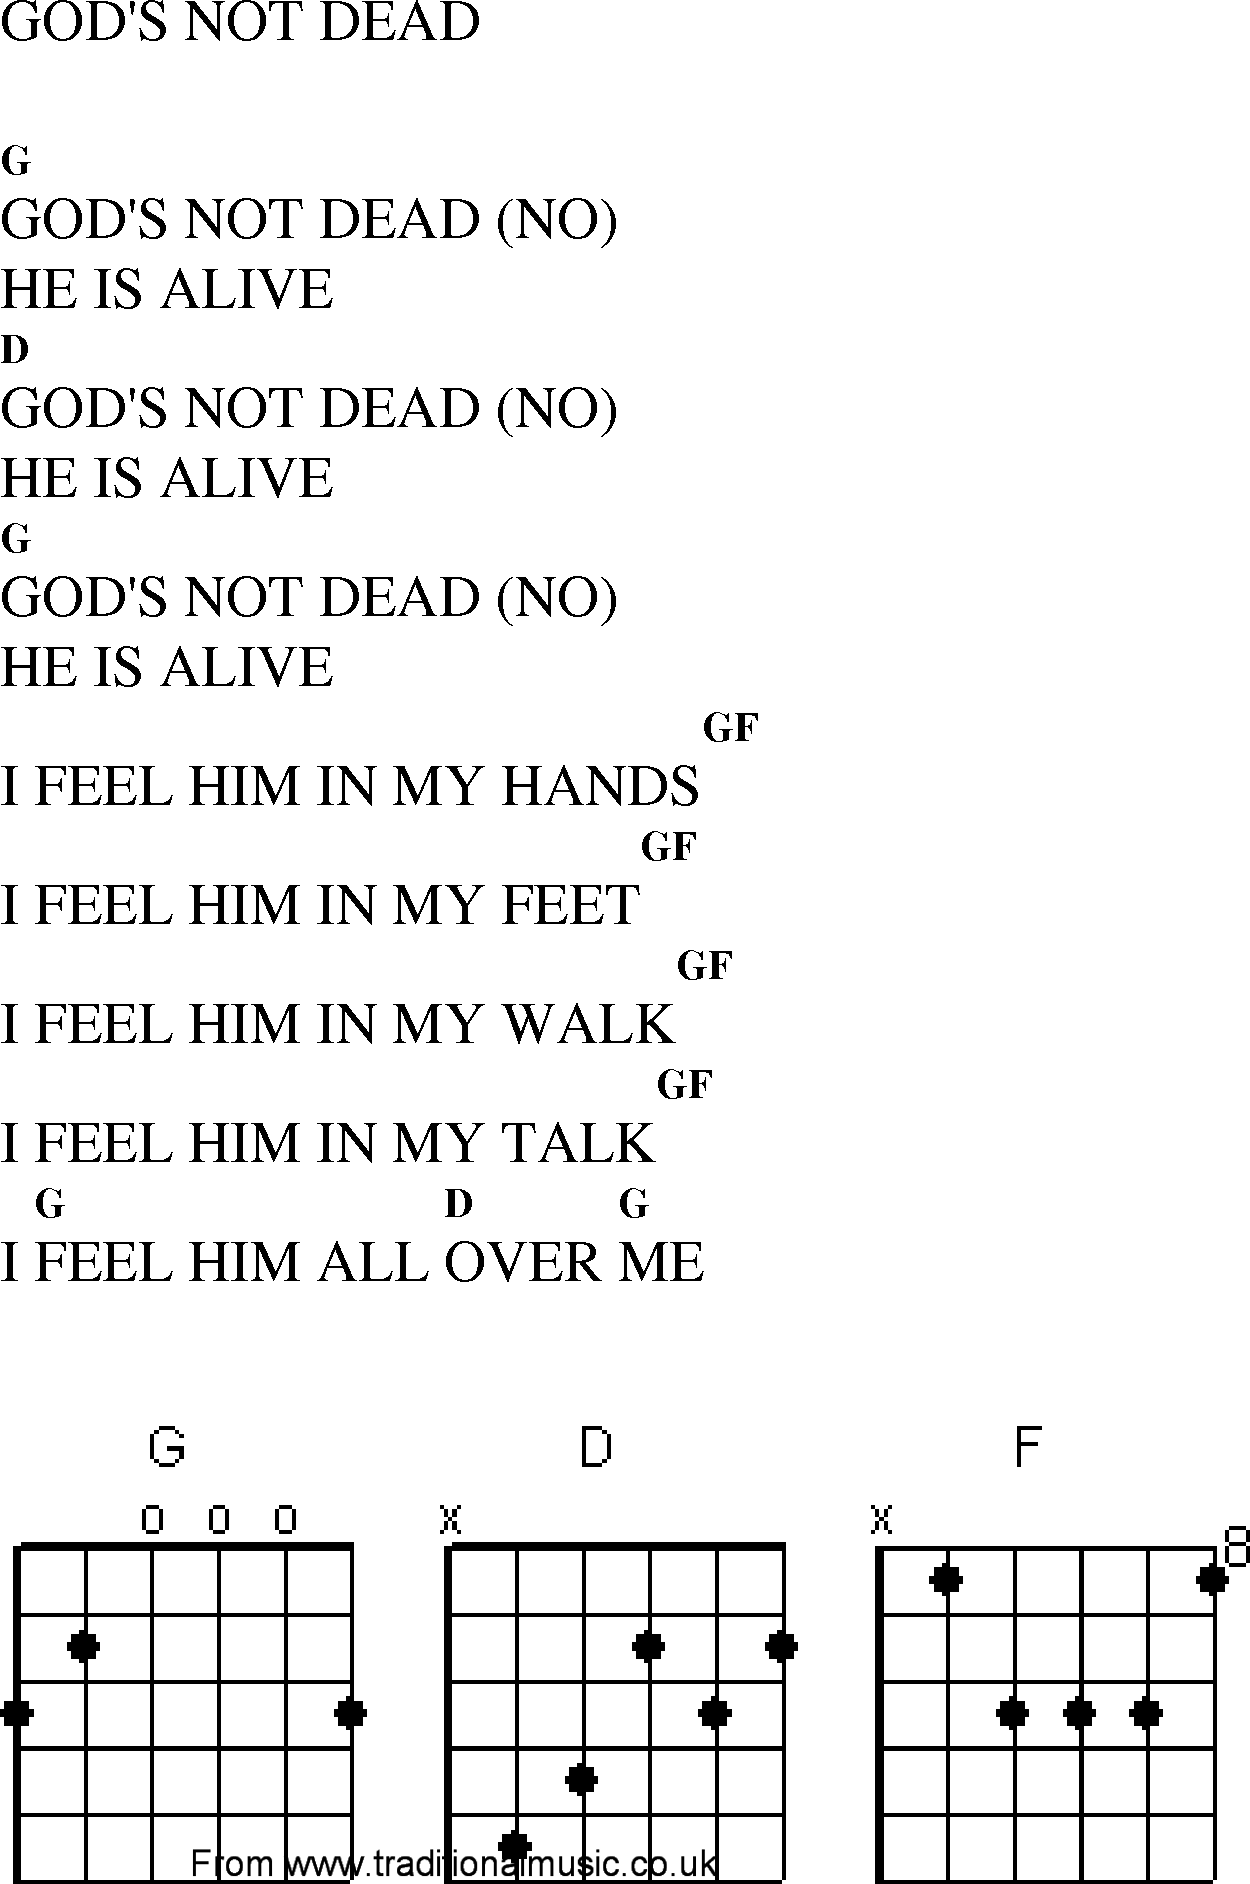 Gospel Song: gods_not_dead, lyrics and chords.